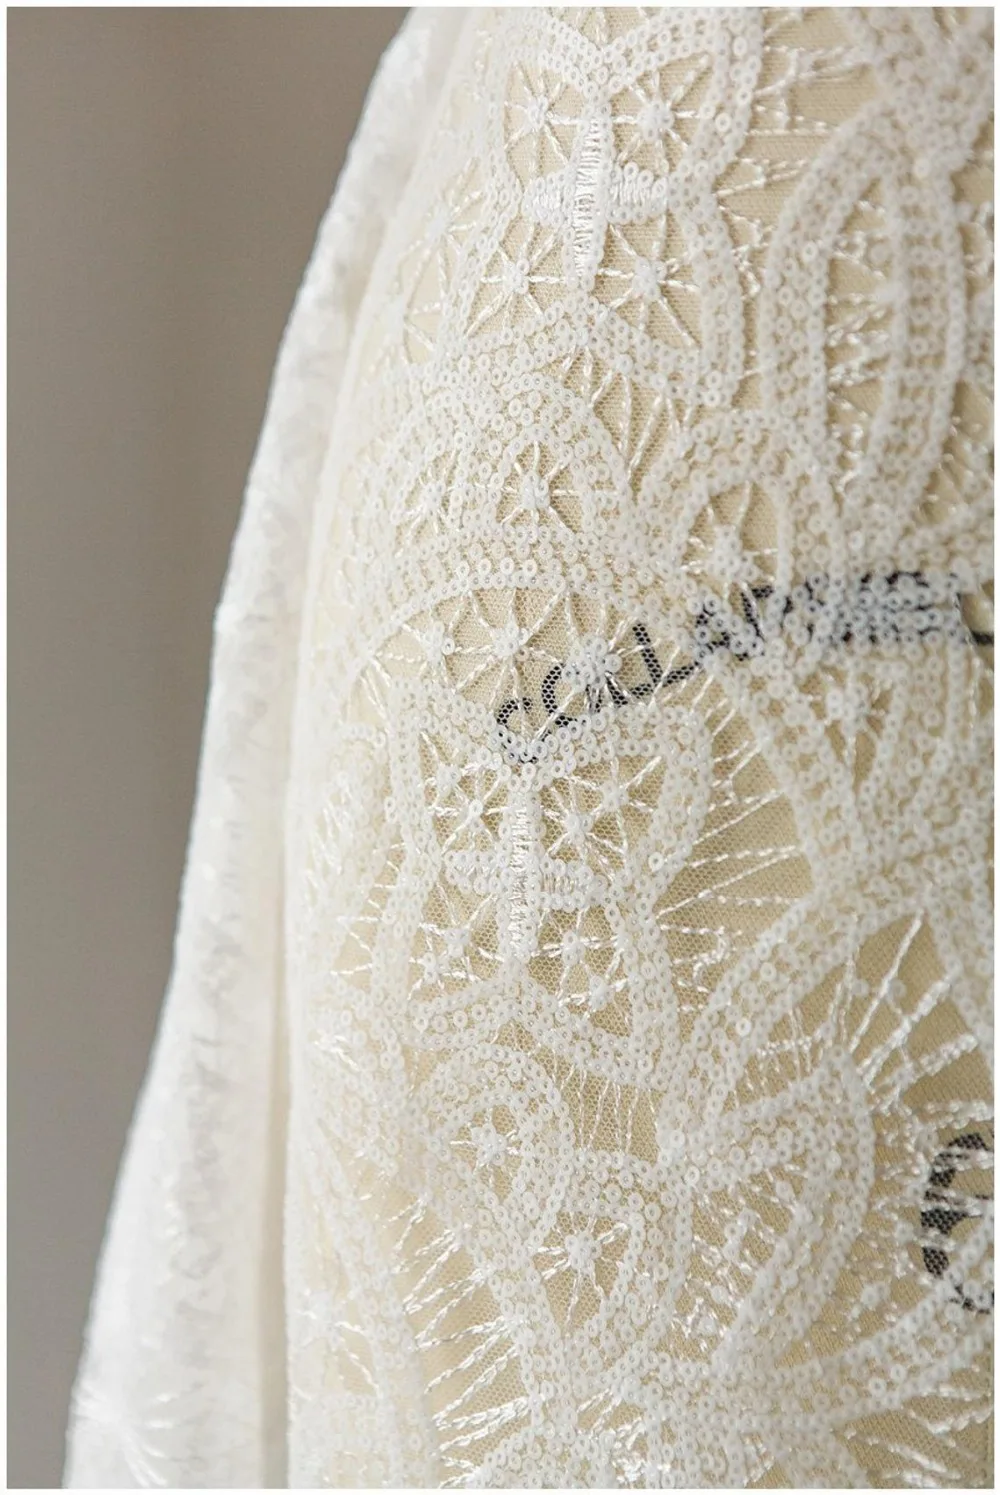 1 ярд Современная Геометрическая кружевная ткань с белыми блестками, свадебная кружевная ткань, кружевная ткань для свадебного платья, кружевная ткань с блестками